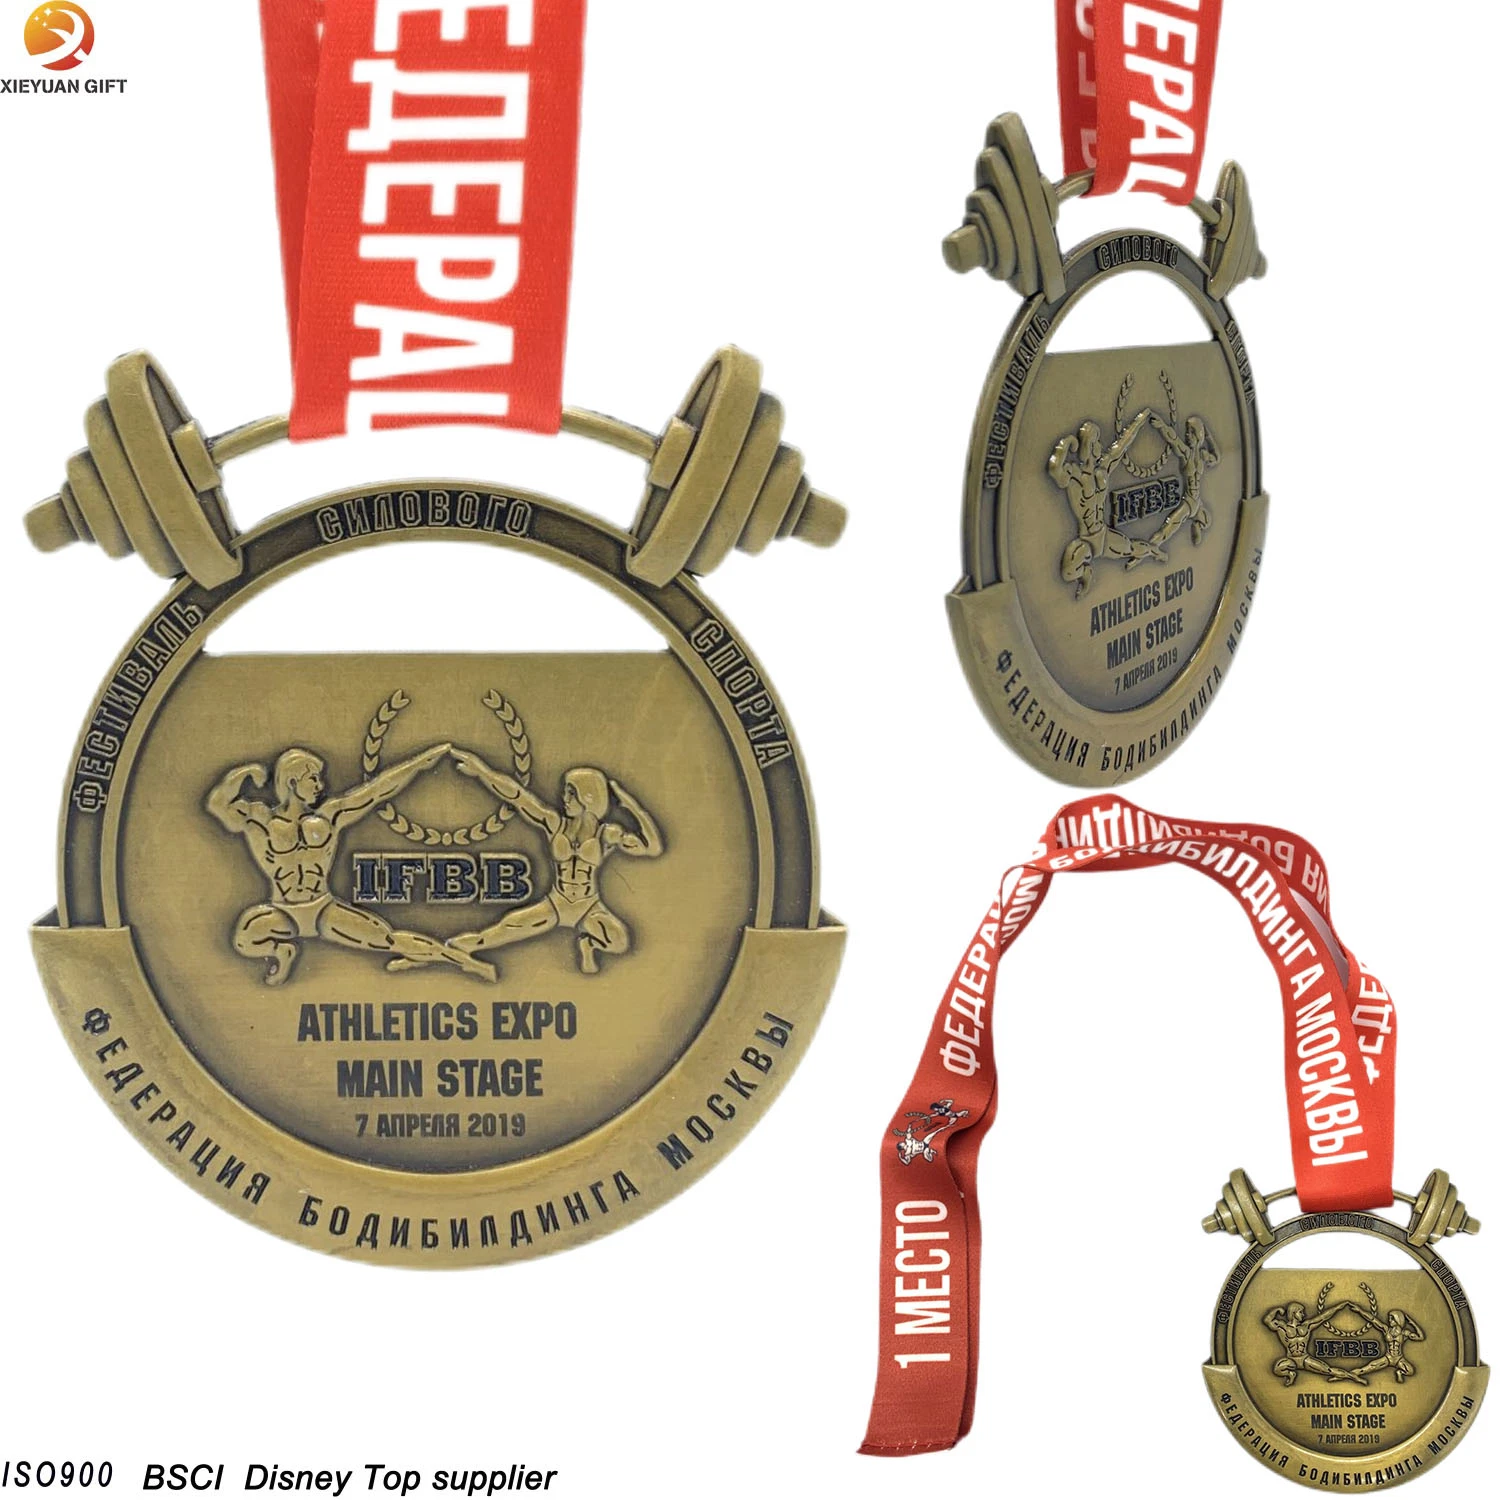 Diseño de fábrica China de lujo personalizado de metal de aleación de zinc oro antiguo medallas en 3D con la cinta su propio logotipo personalizado el levantamiento de pesas Gimnasia Fitness Deporte medalla